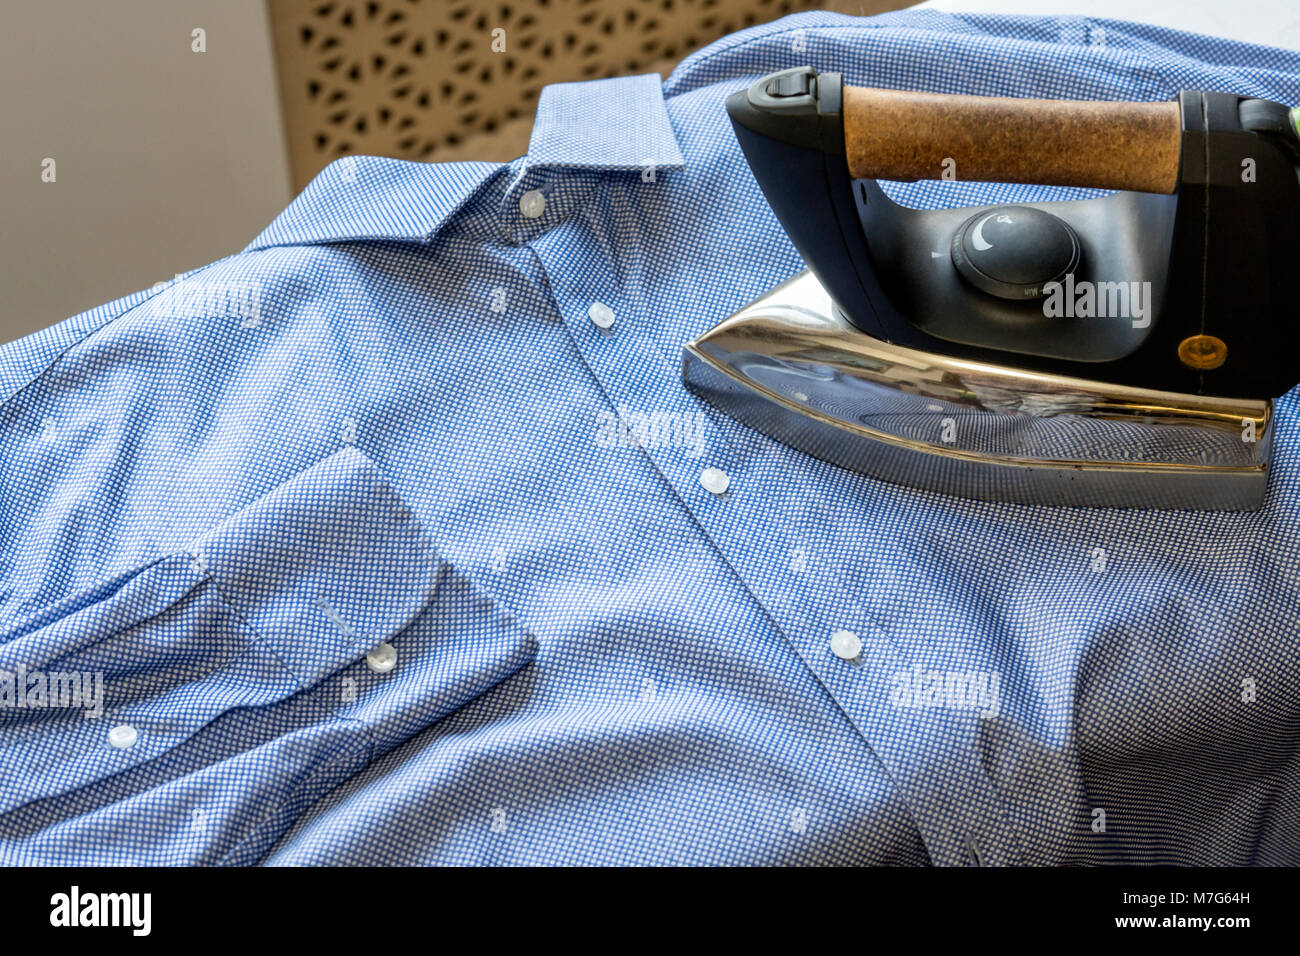 Los trazos de hierro el hombre de la camisa azul. Limpieza y pulcritud Foto de stock